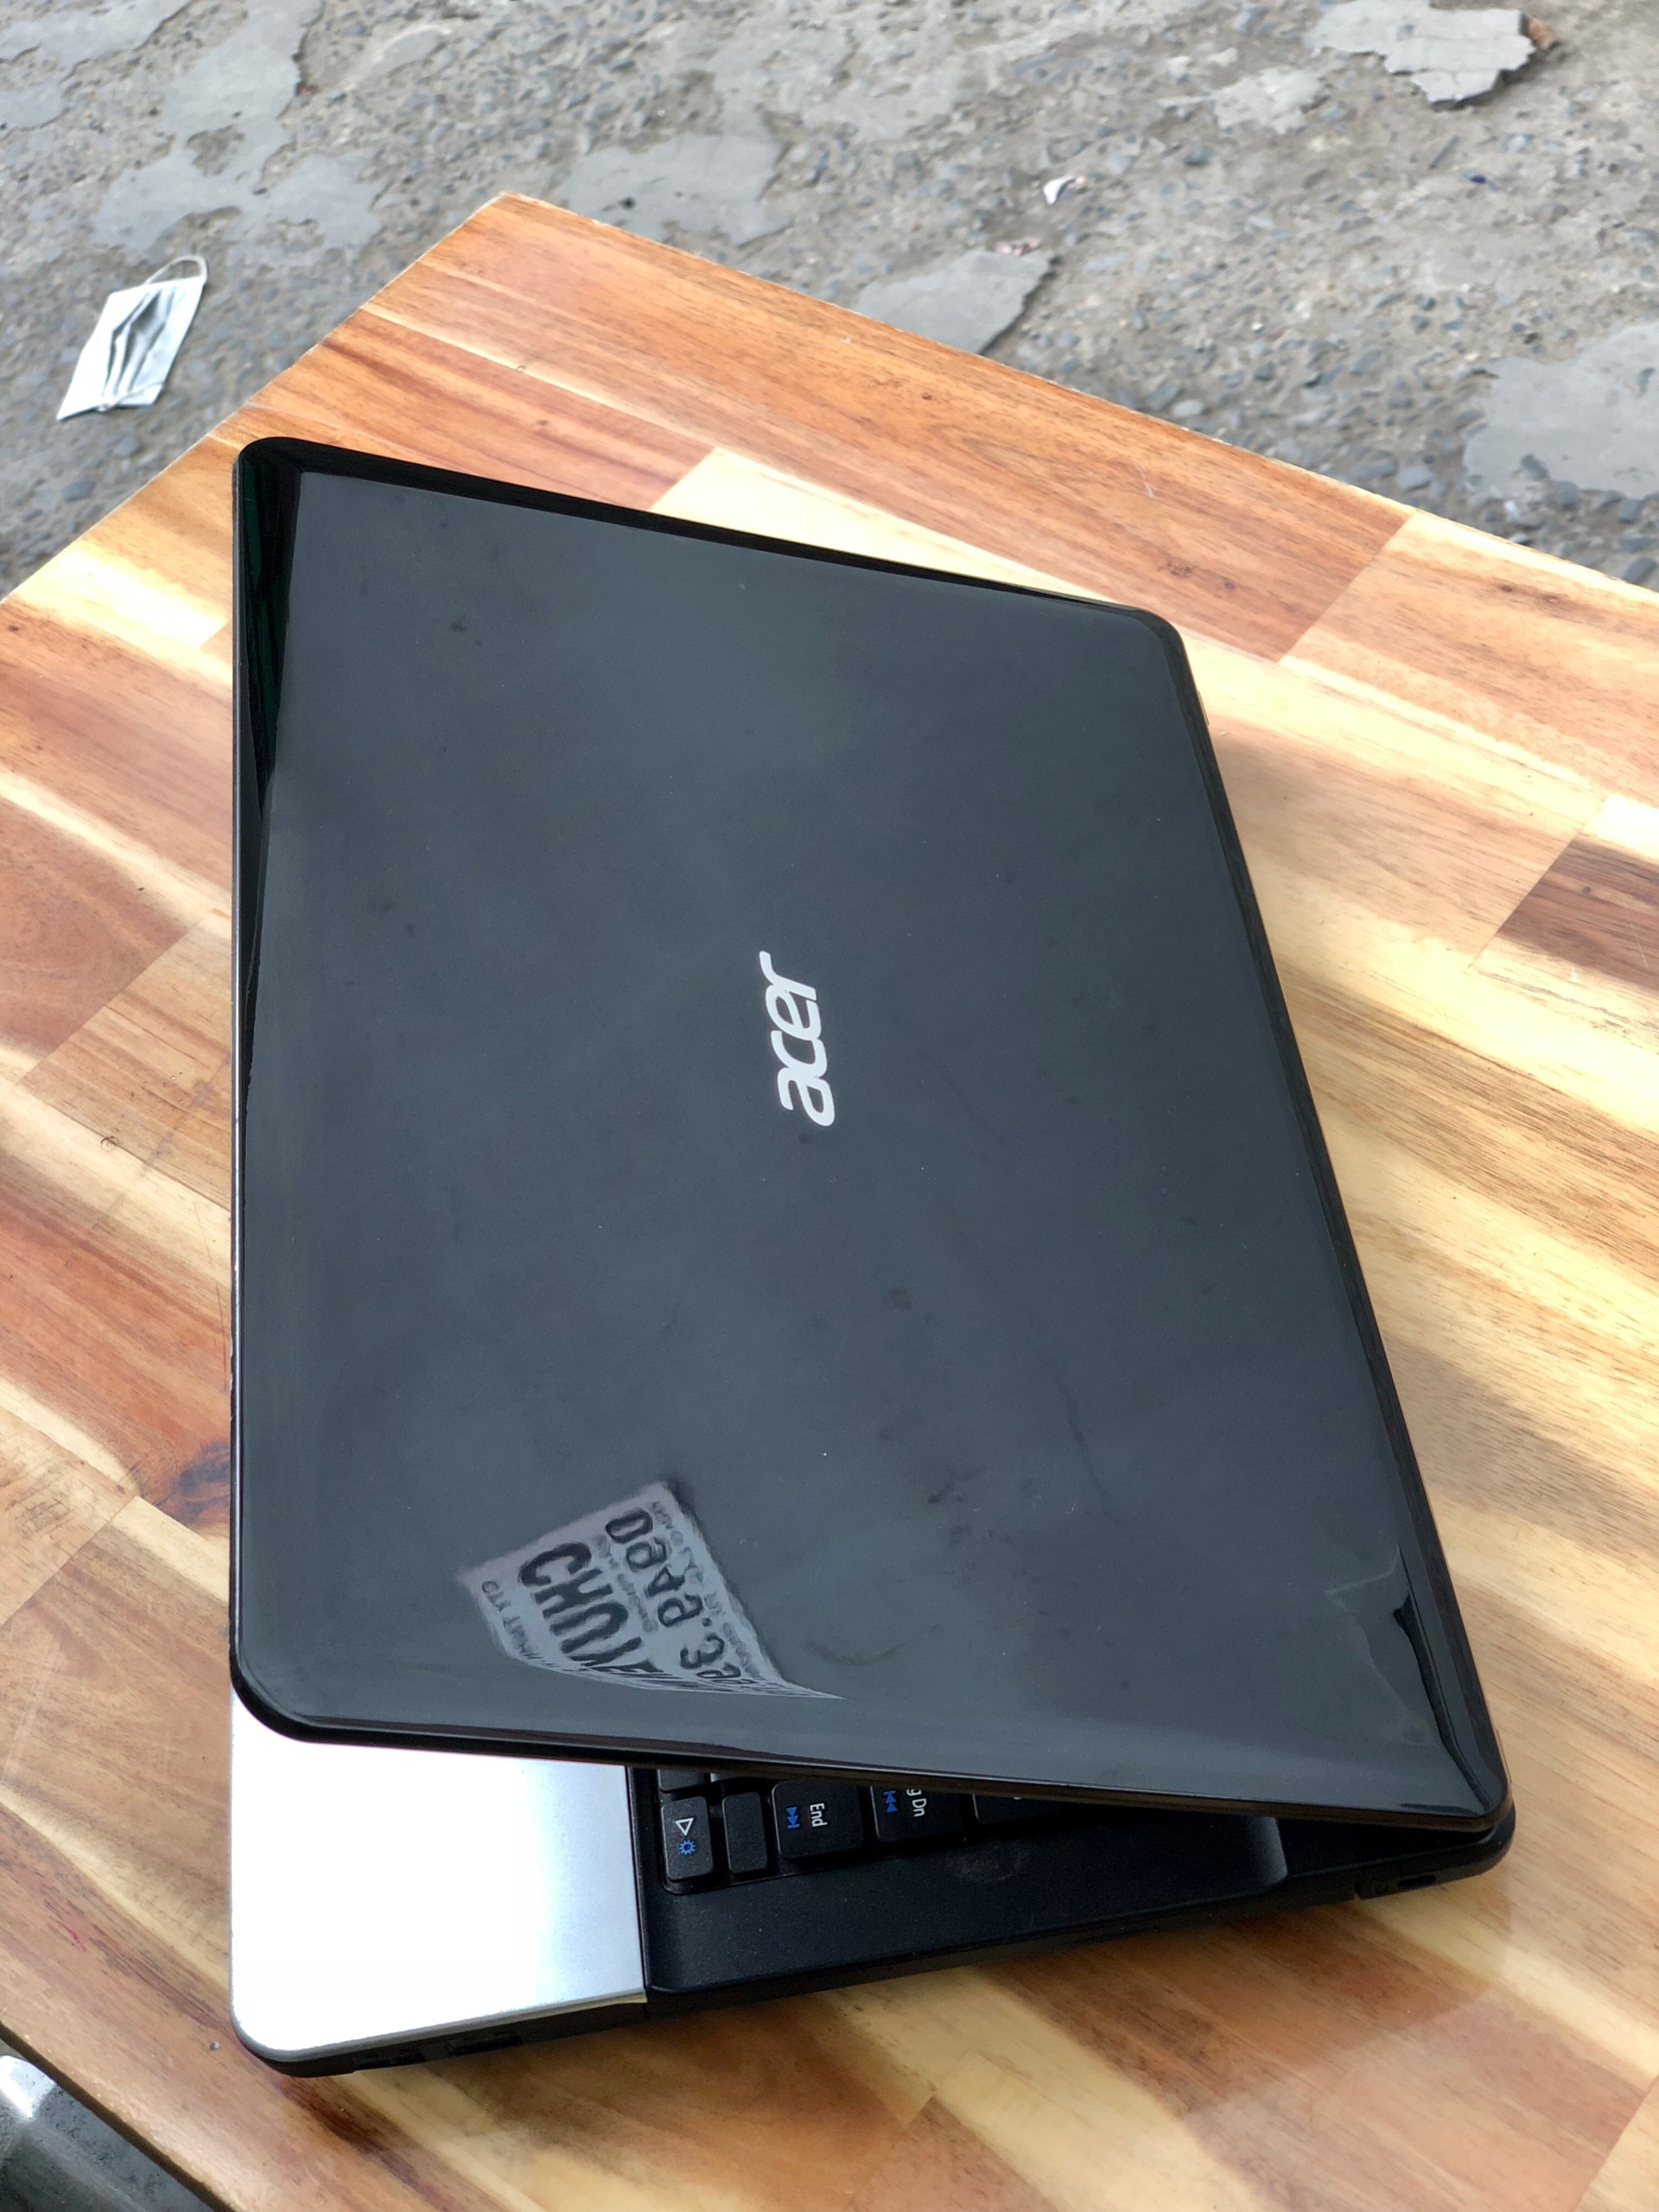 Laptop Acer Aspire E1-431, i3 3110M 4G 500G Đẹp zin 100% Giá rẻ1